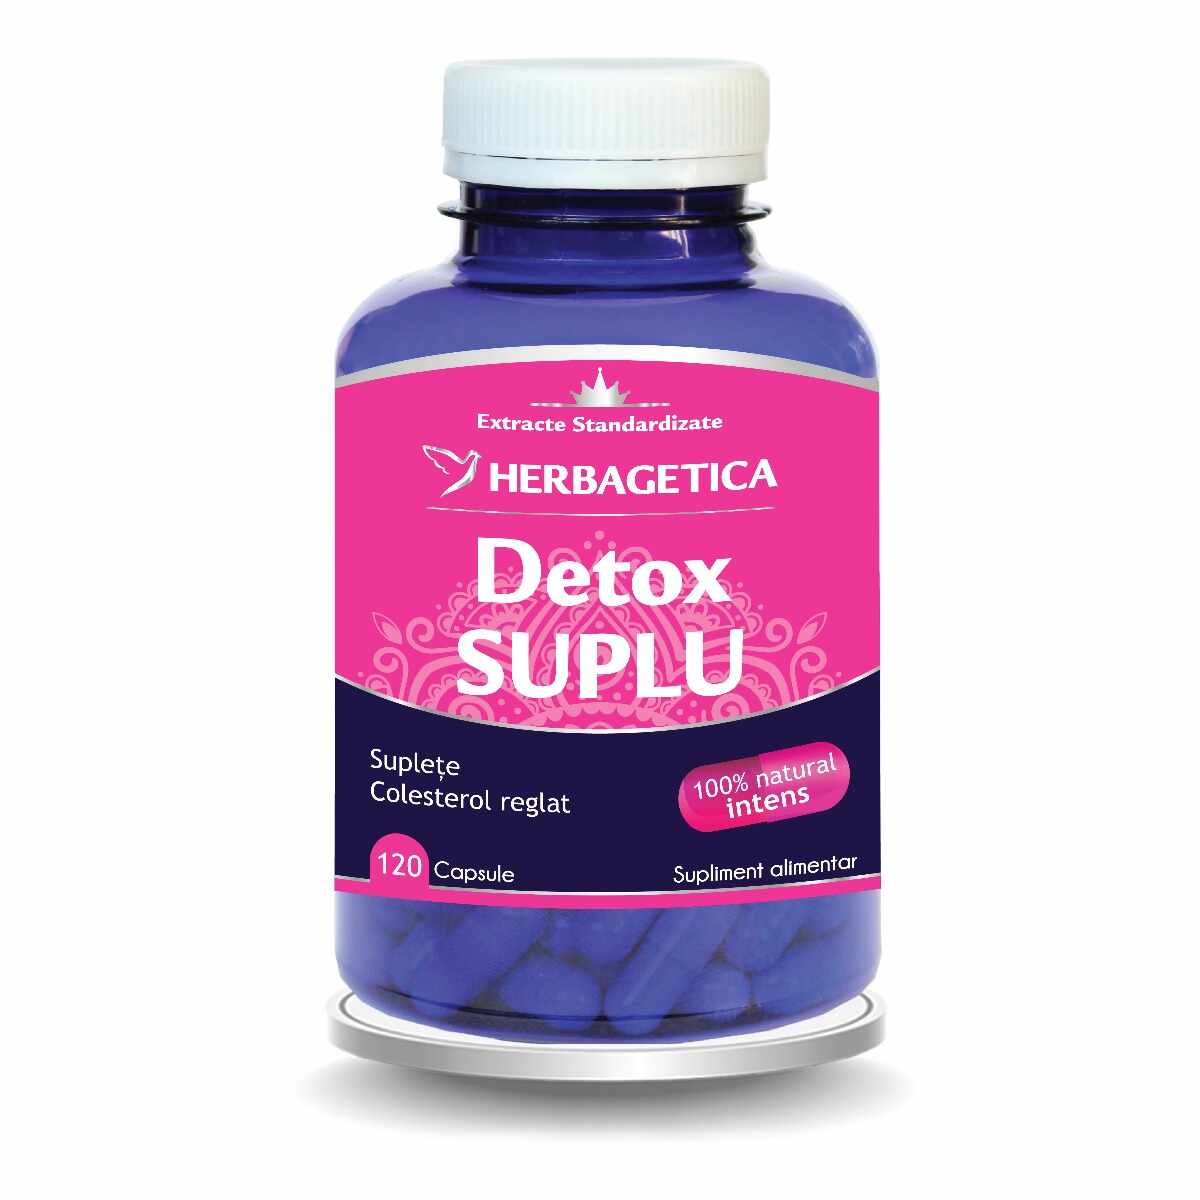 Detox Suplu, 120 capsule, Herbagetica